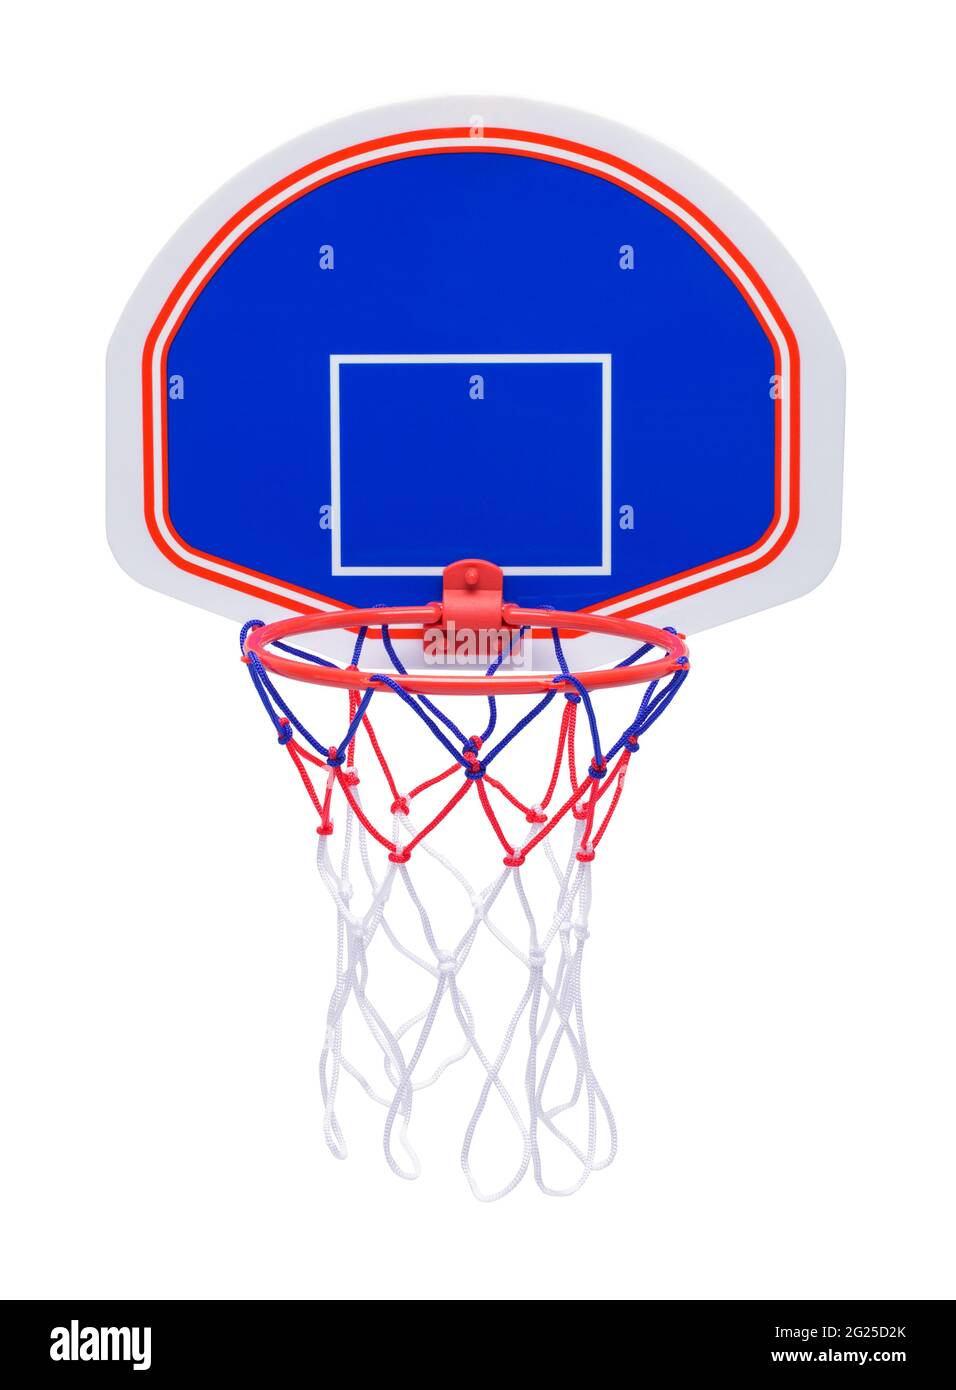 JUNIOR Bambini Mini Basket Net giocattolo Hoop Palla Con Anello-Novità da tavolo 